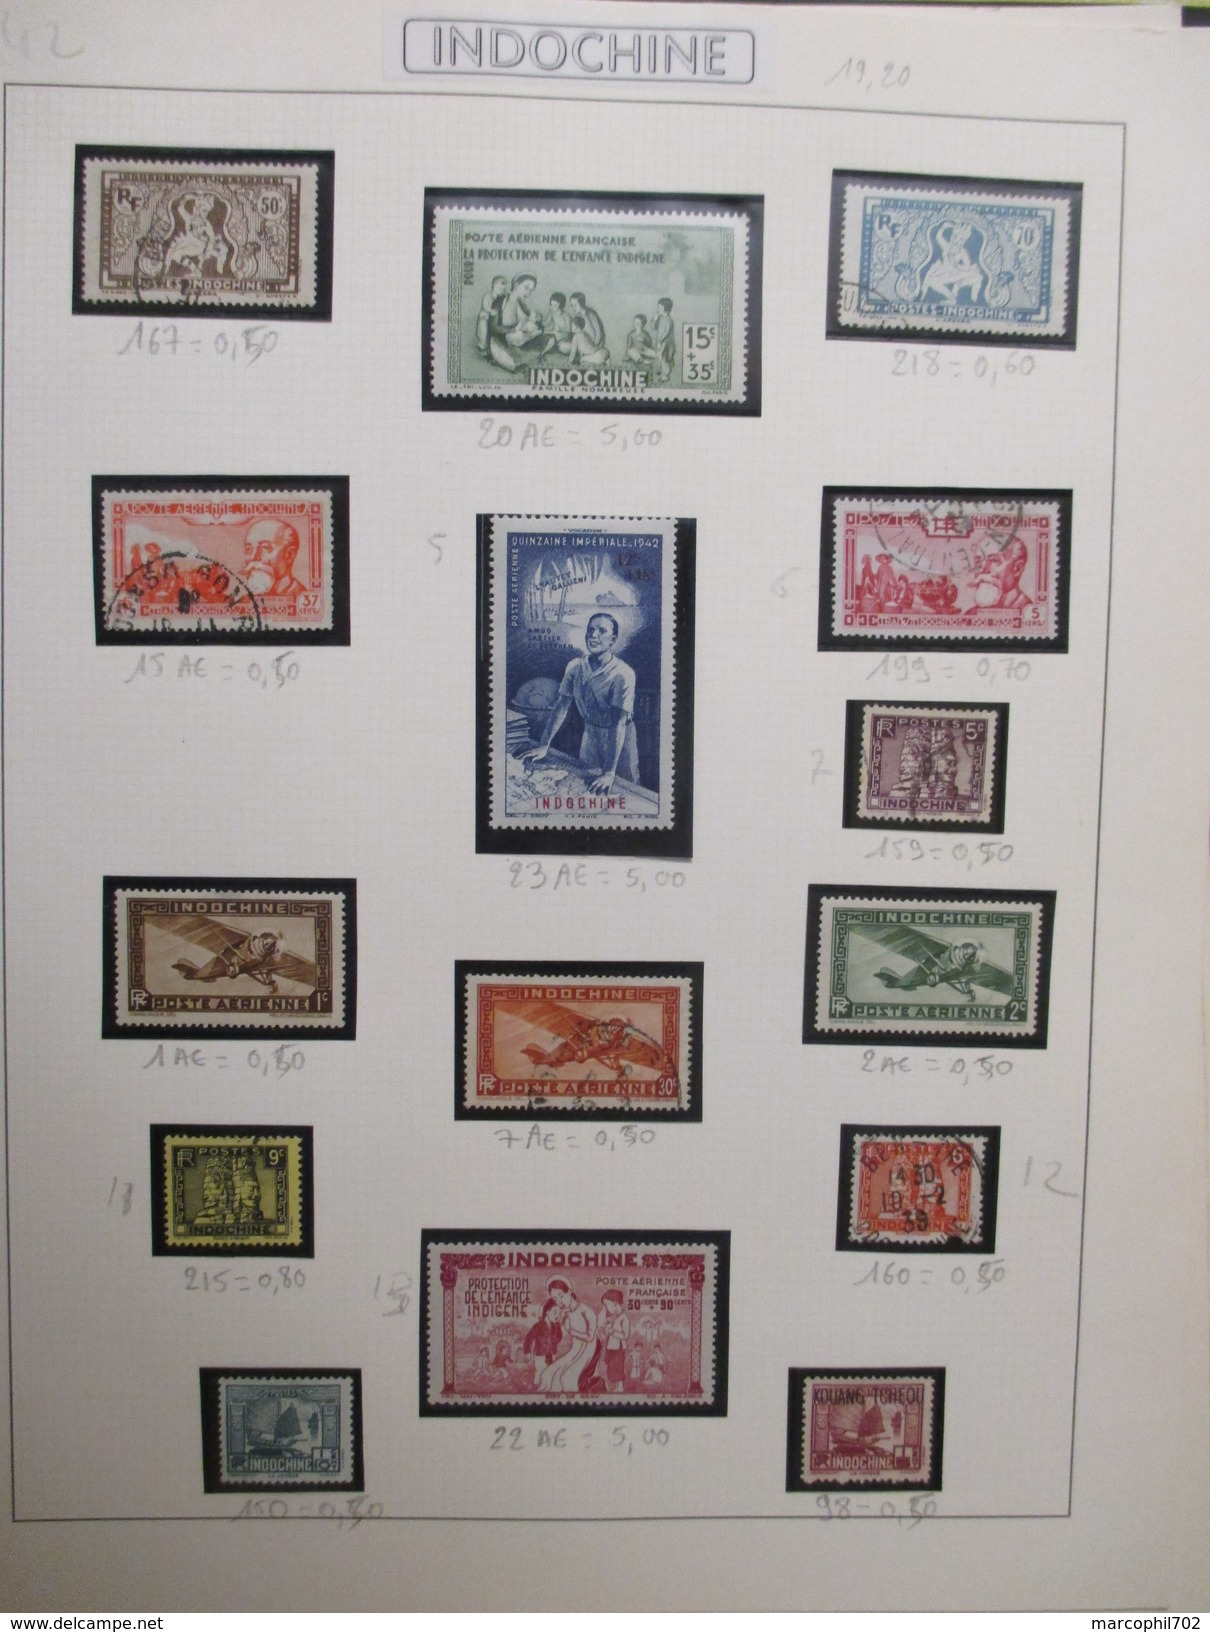 petit lot de timbres anciennes colonnies francaise  ces timbres sont neuf ou charnieres ou oblitérés 2